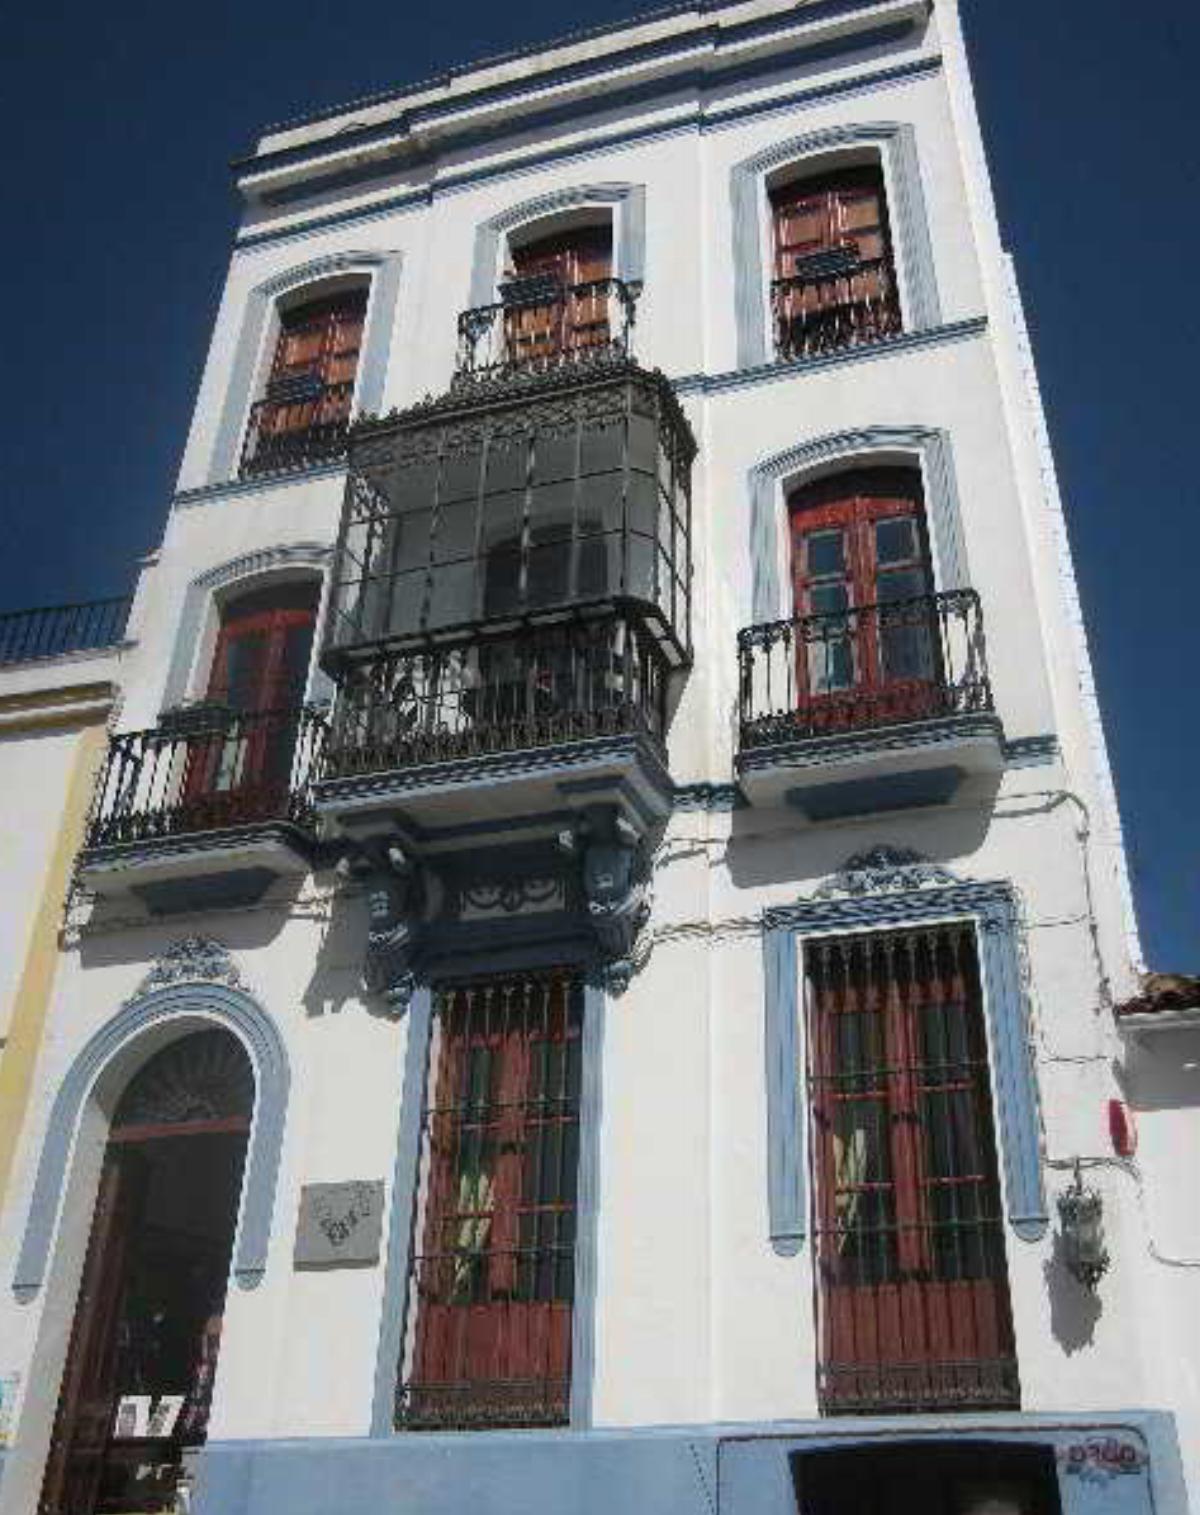 La Casa Noble Hotel Huelva Spain